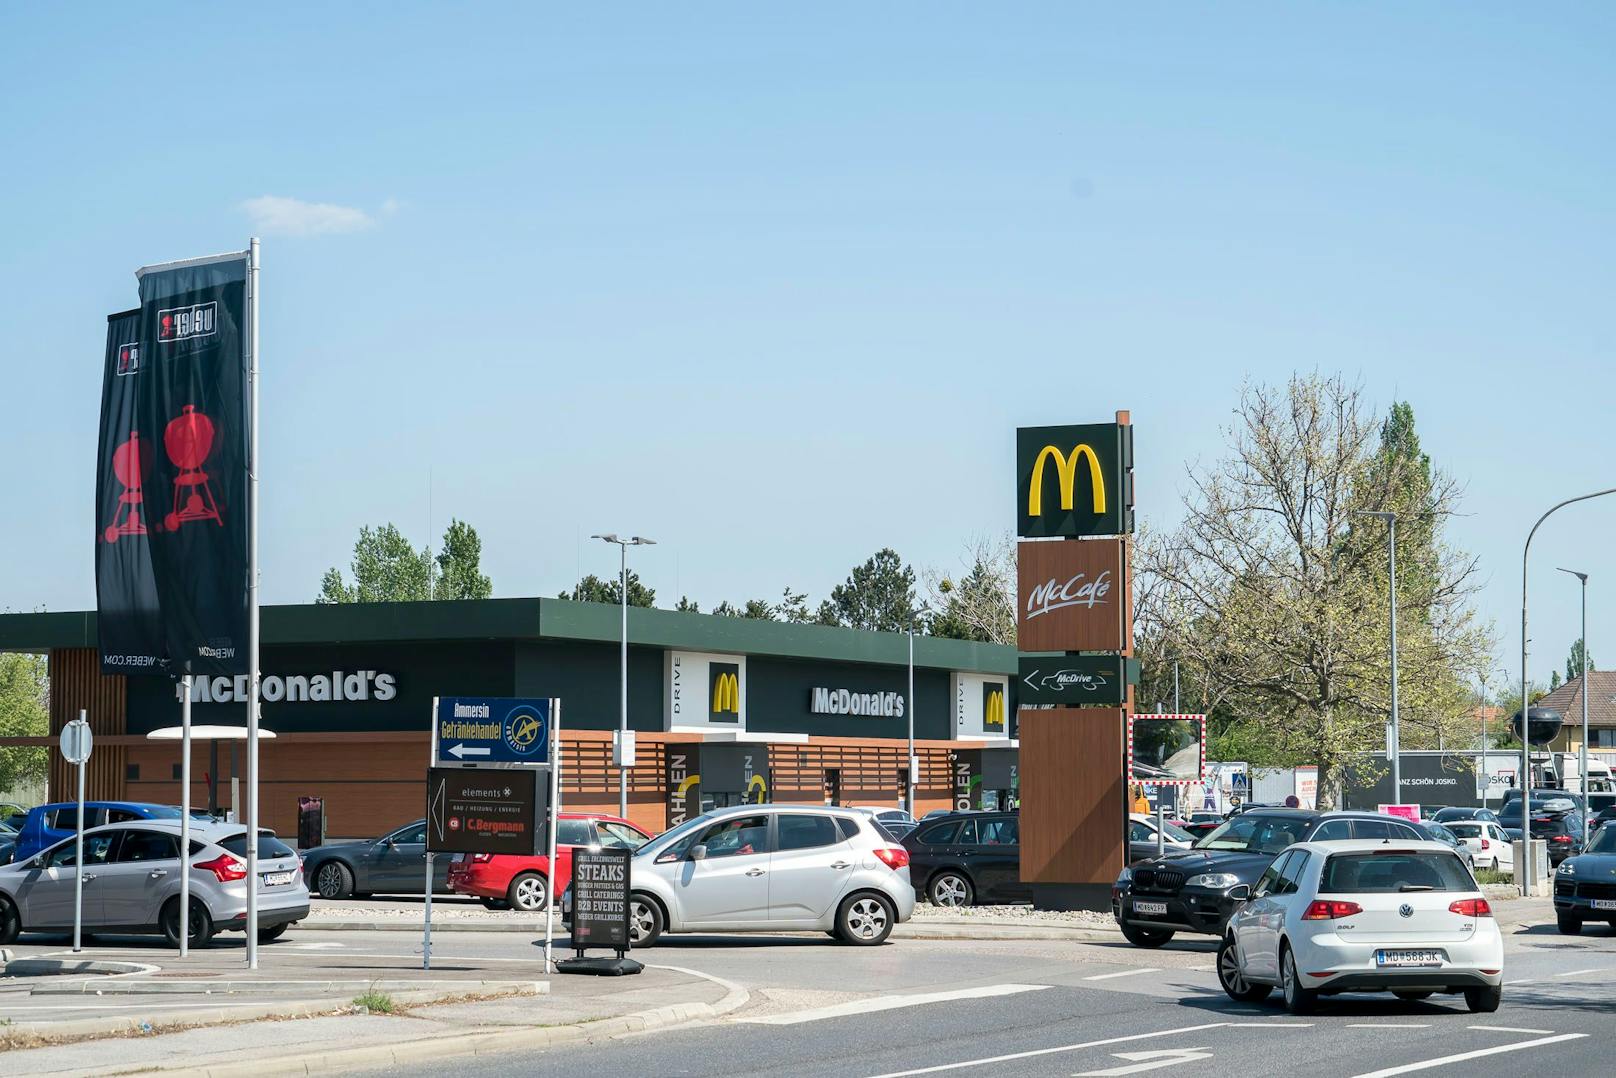 Je nach Standort gibt es bei McDonald's eine beschränkte Parkdauer von 90 Minuten.